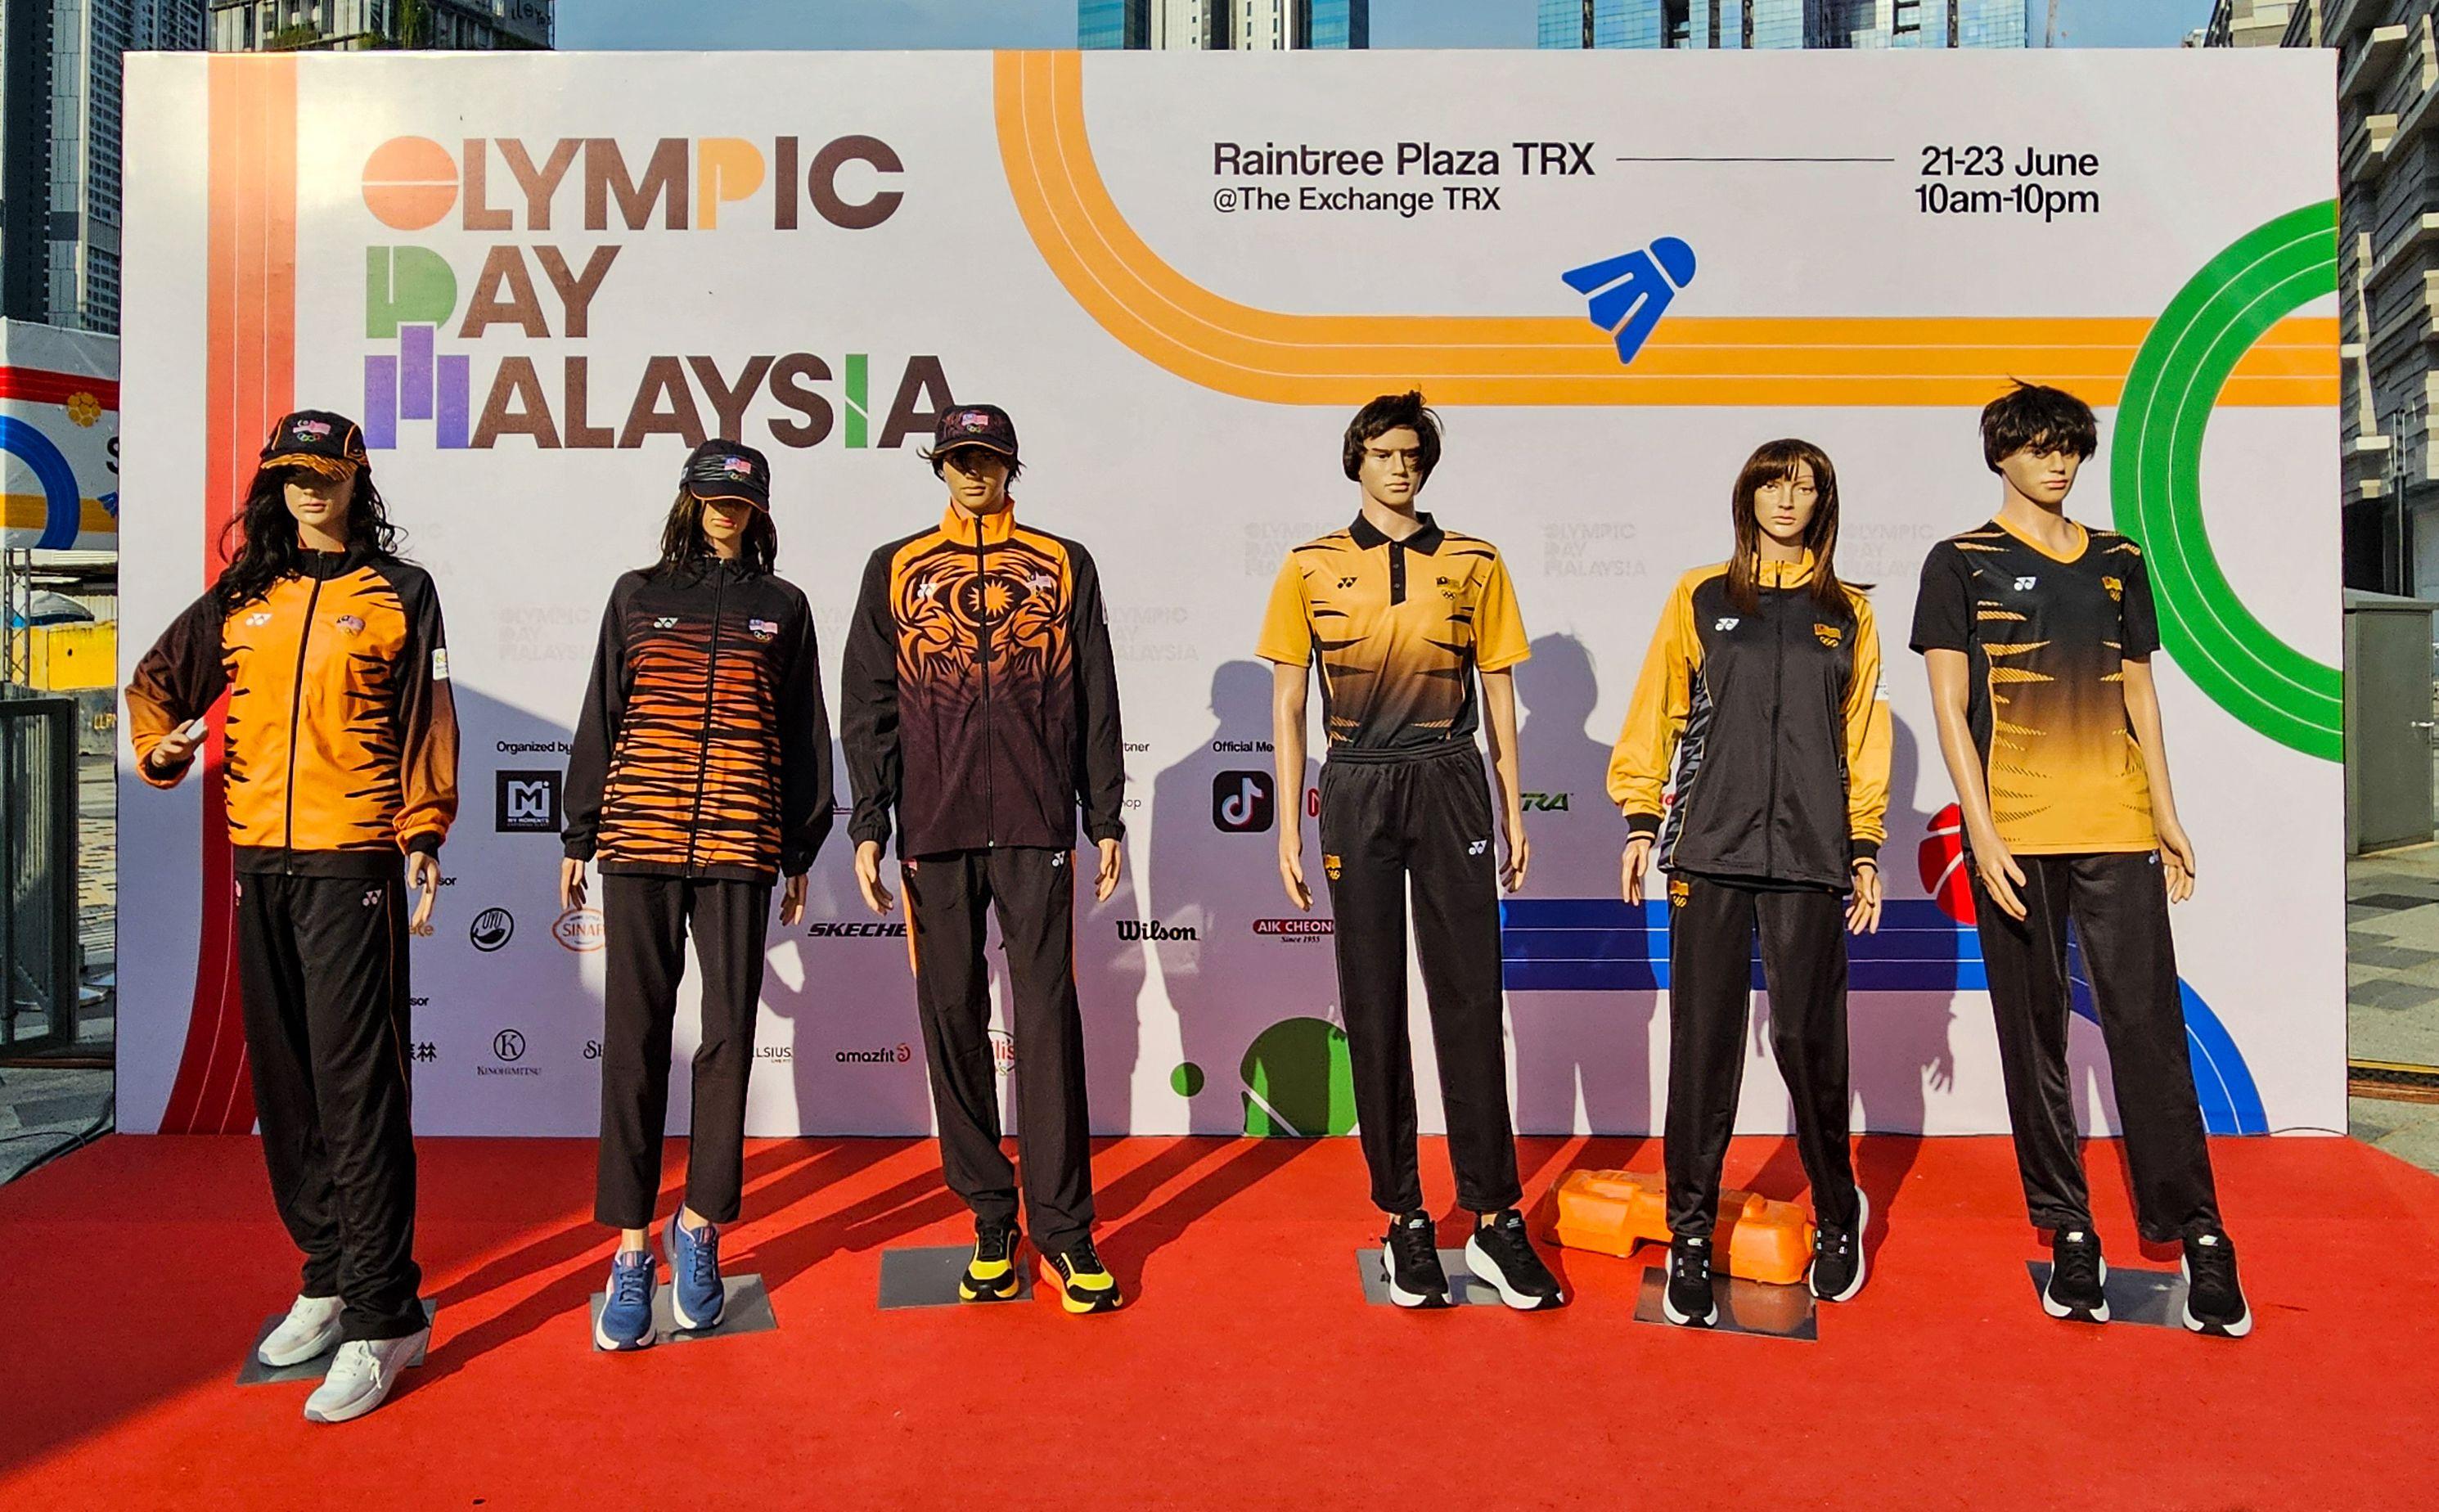 球迷强烈反对 马来西亚重新设计“丑陋”奥运球衣